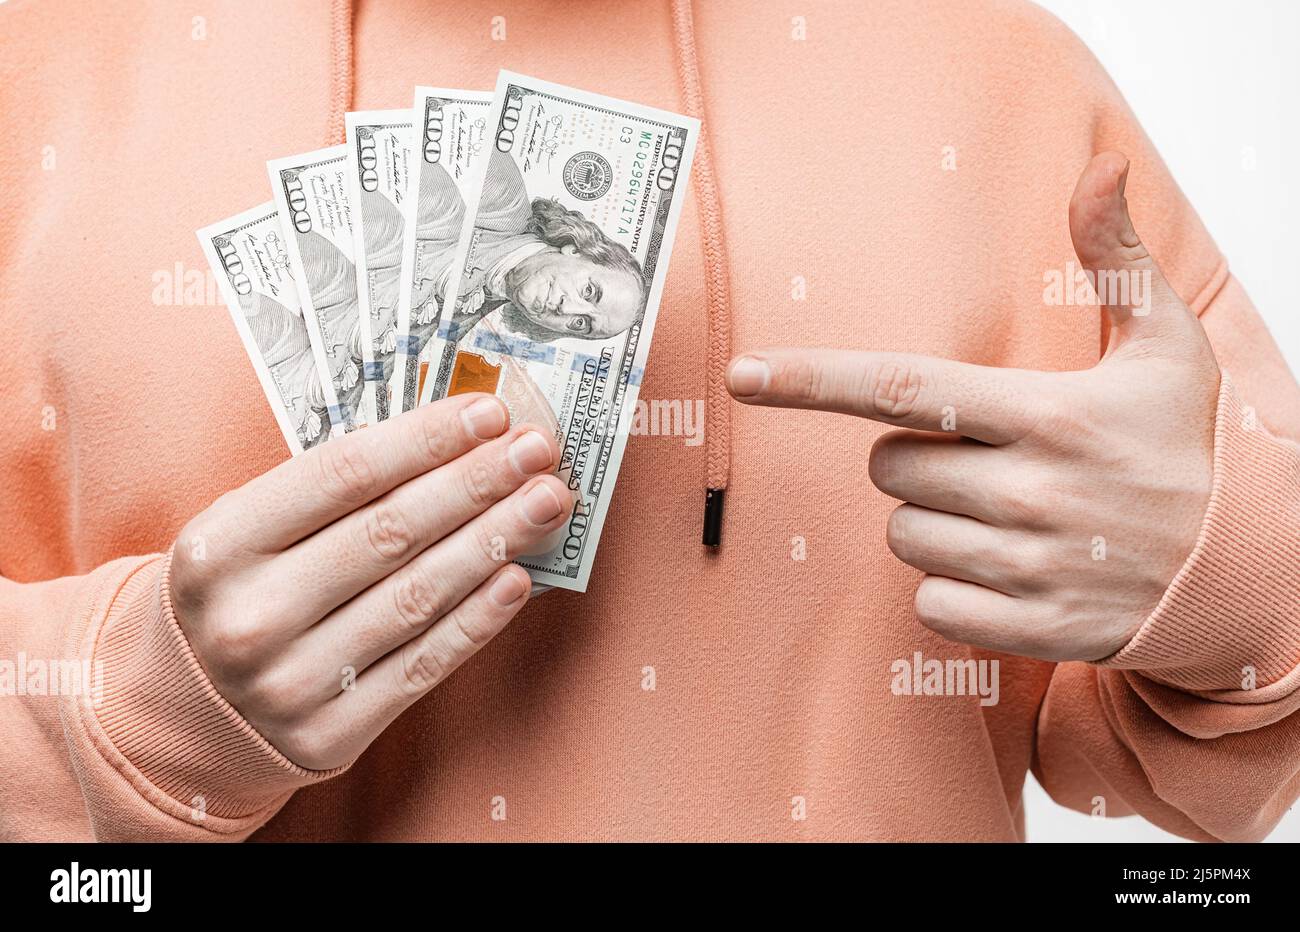 Mann, der Geld in der Dollar-Währung in den Händen hält. Kerl haben Bargeld in einem rosa oder orange Sweatshirt. Das Konzept von Geld, Gehalt, Finanzen, Investitionen Stockfoto